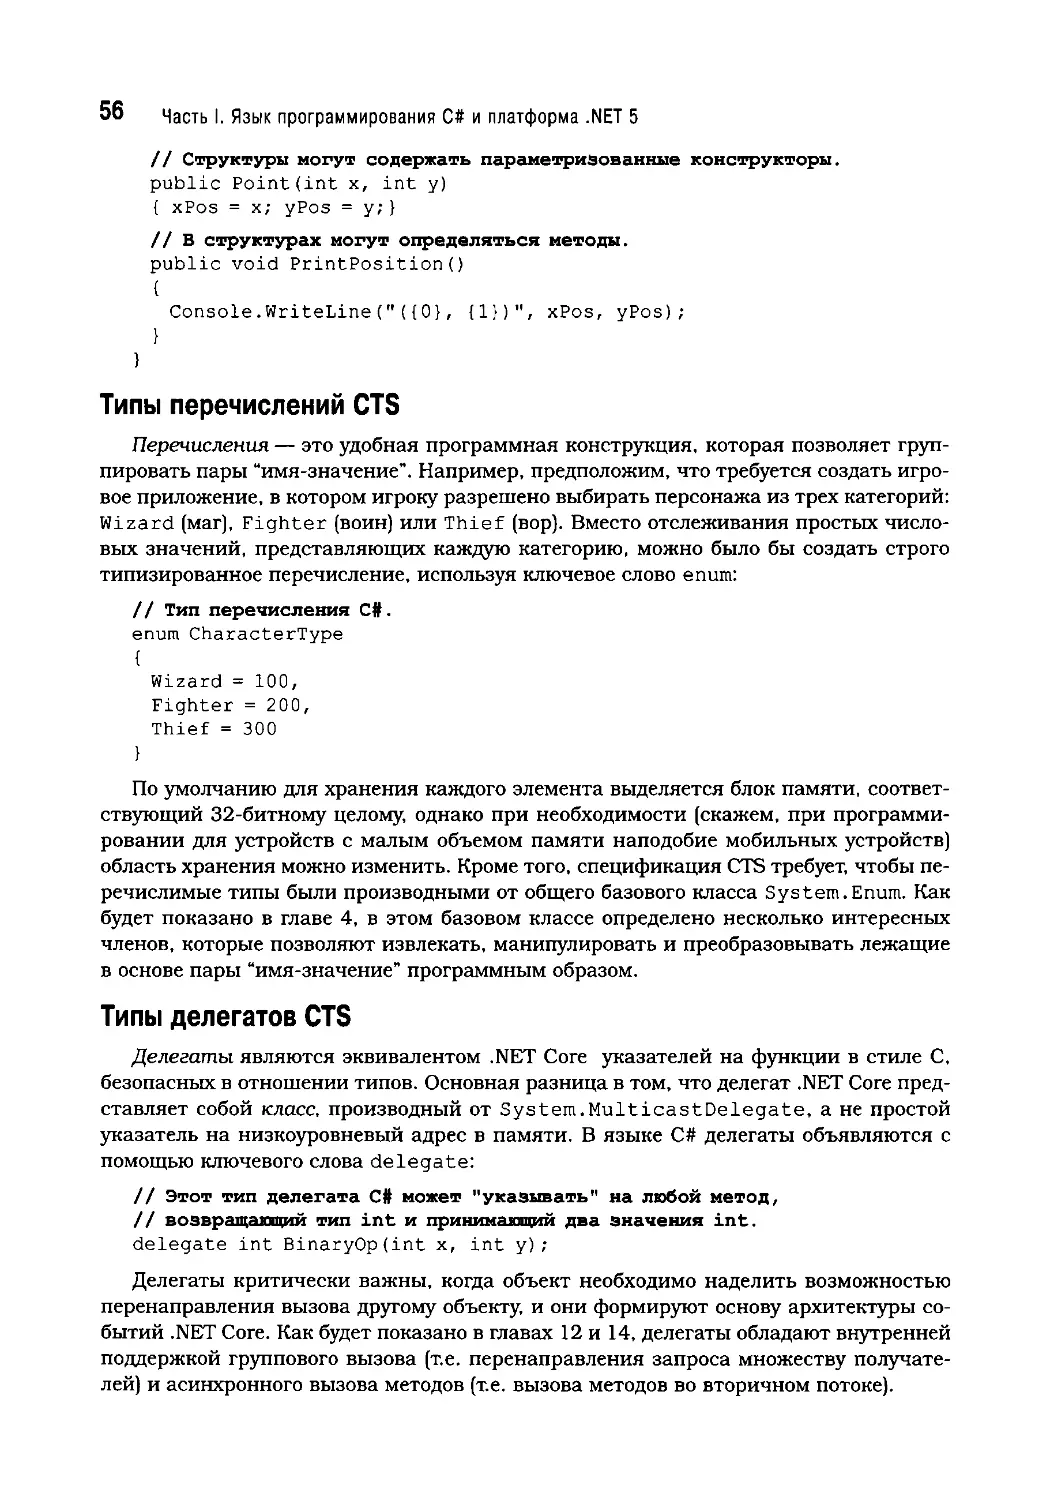 Типы перечислений CTS
Типы делегатов CTS